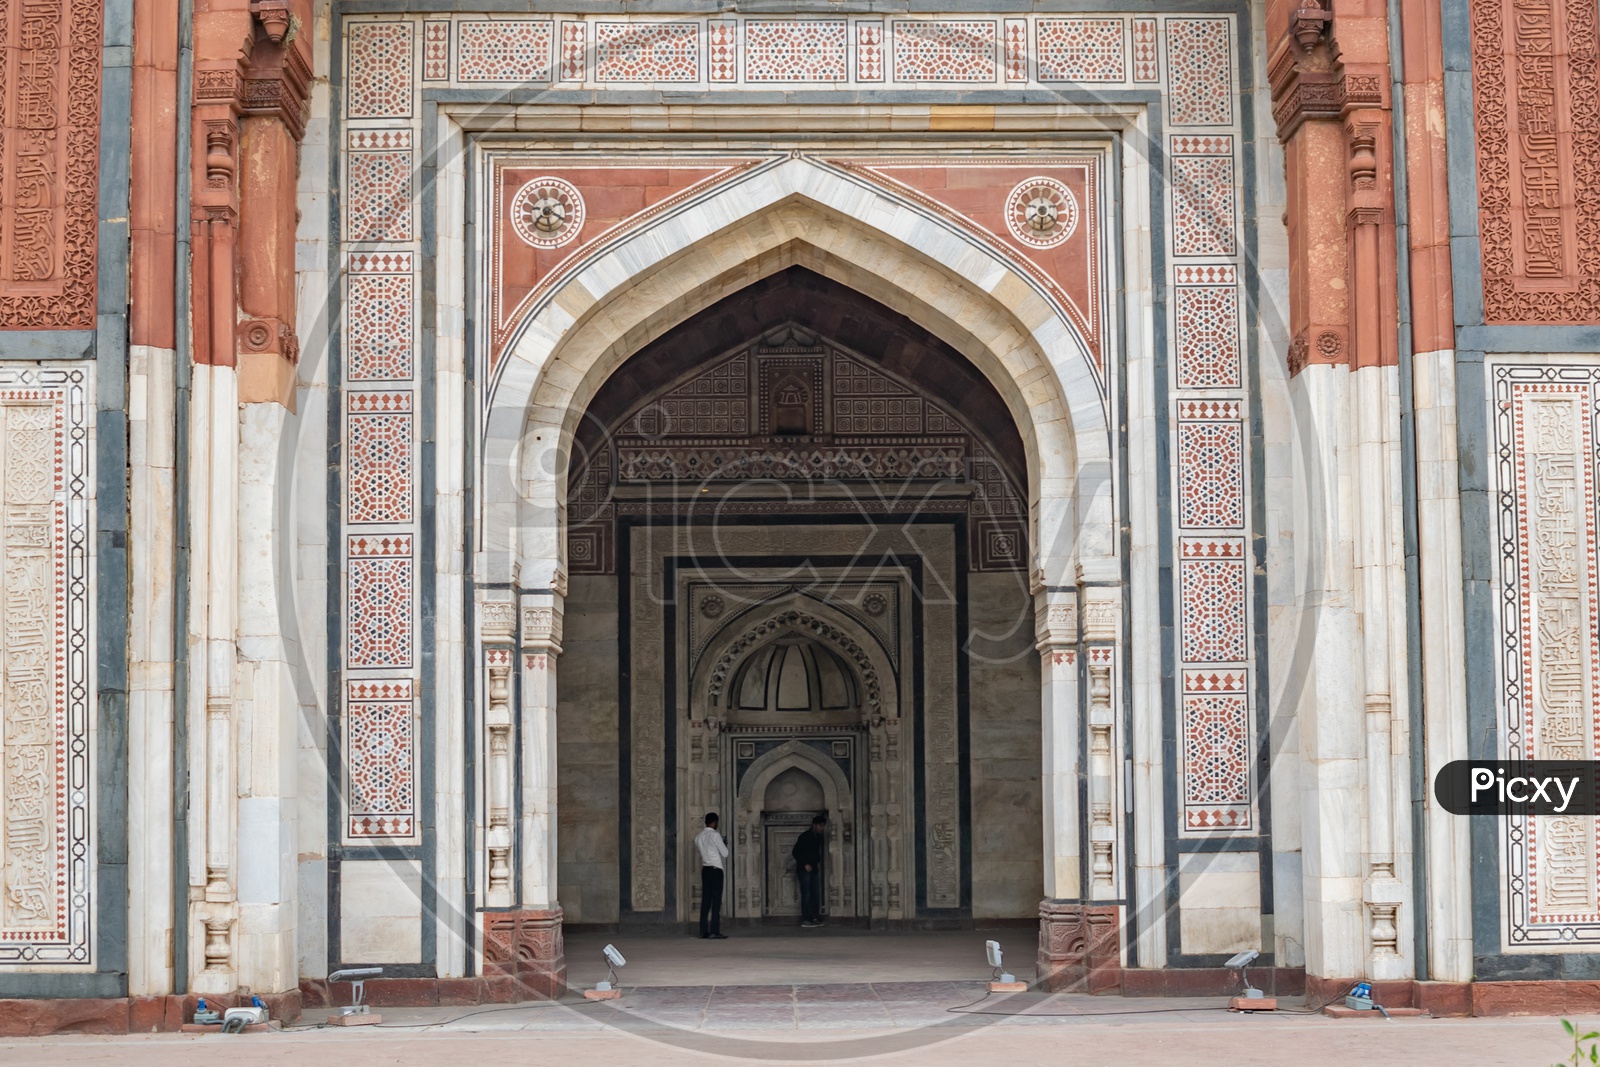 Grand Mosque(Qila-E-Kuhna Masjid), Purana Qila, Delhi